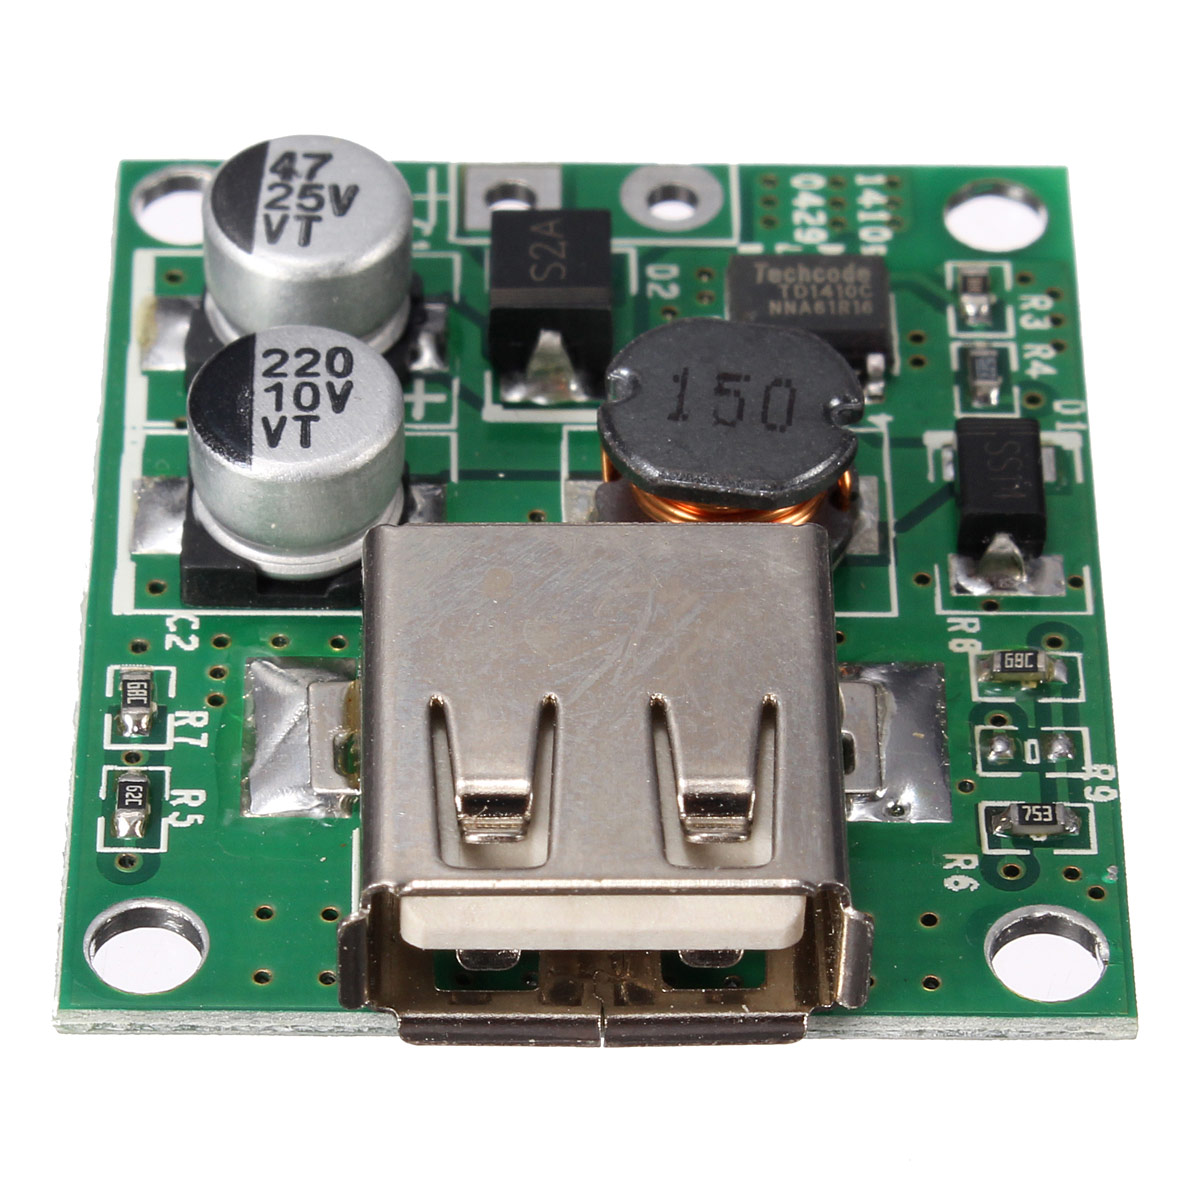 30pcs-5V-2A-Solar-Panel-Power-Bank-USB-Charge-Voltage-Controller-Regulator-Module-6V-20V-Input-For-U-1369819